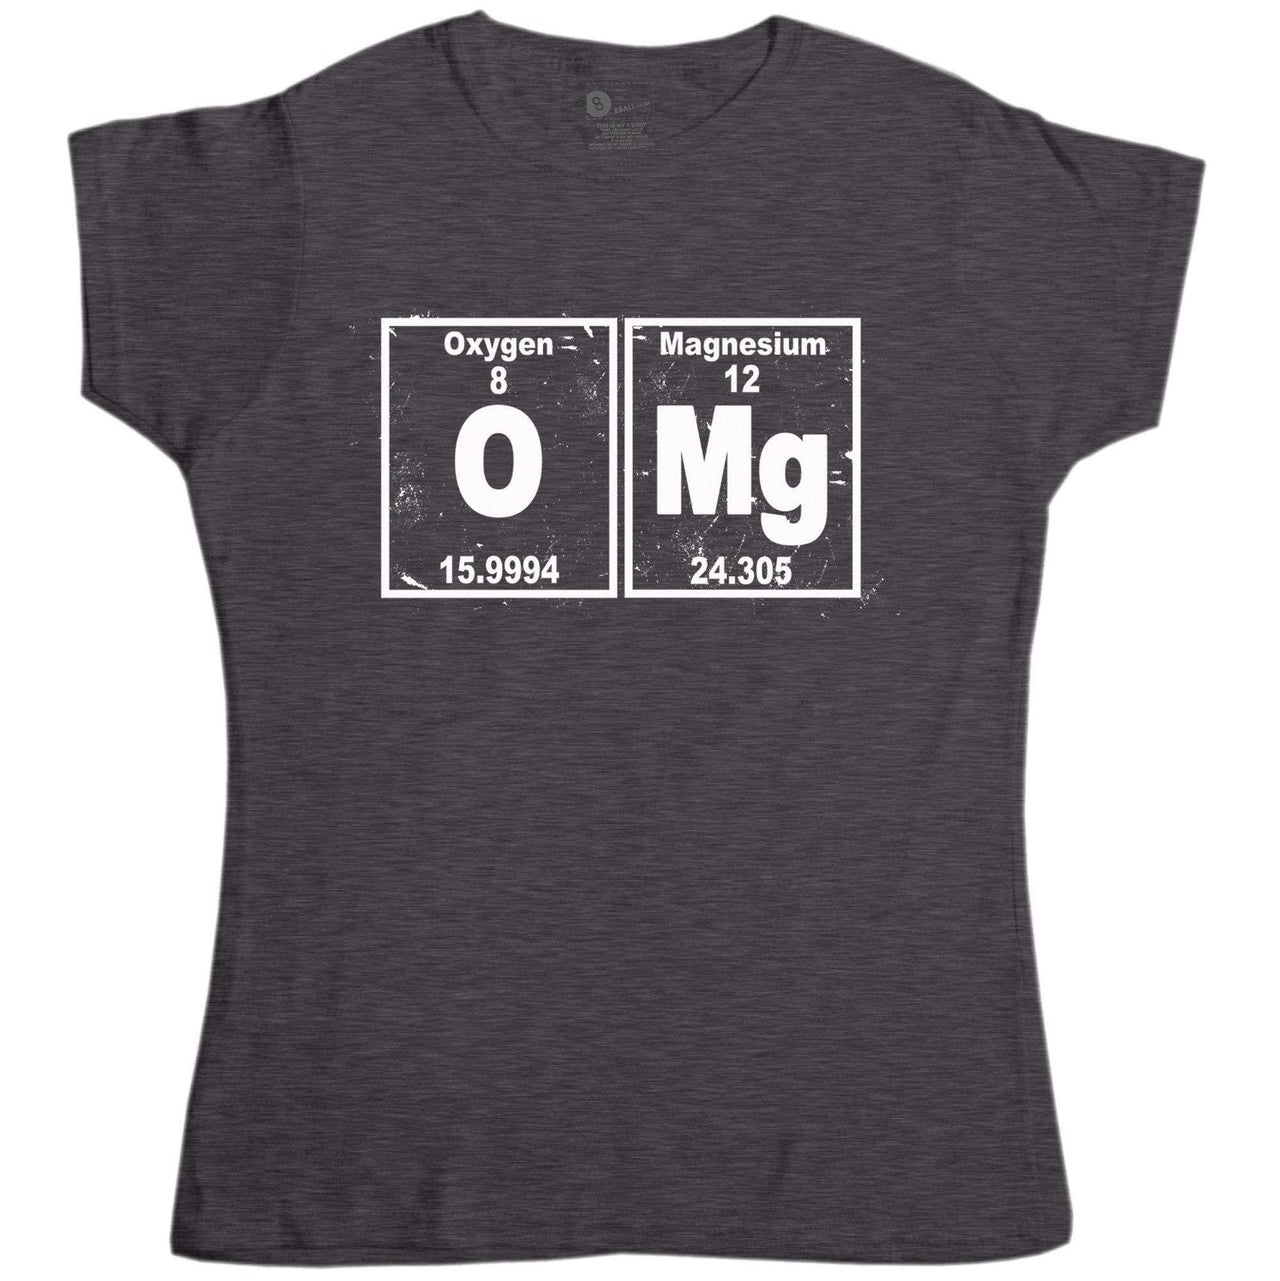 Nerd Geek Science OMG Womens Fitted T-Shirt 8Ball